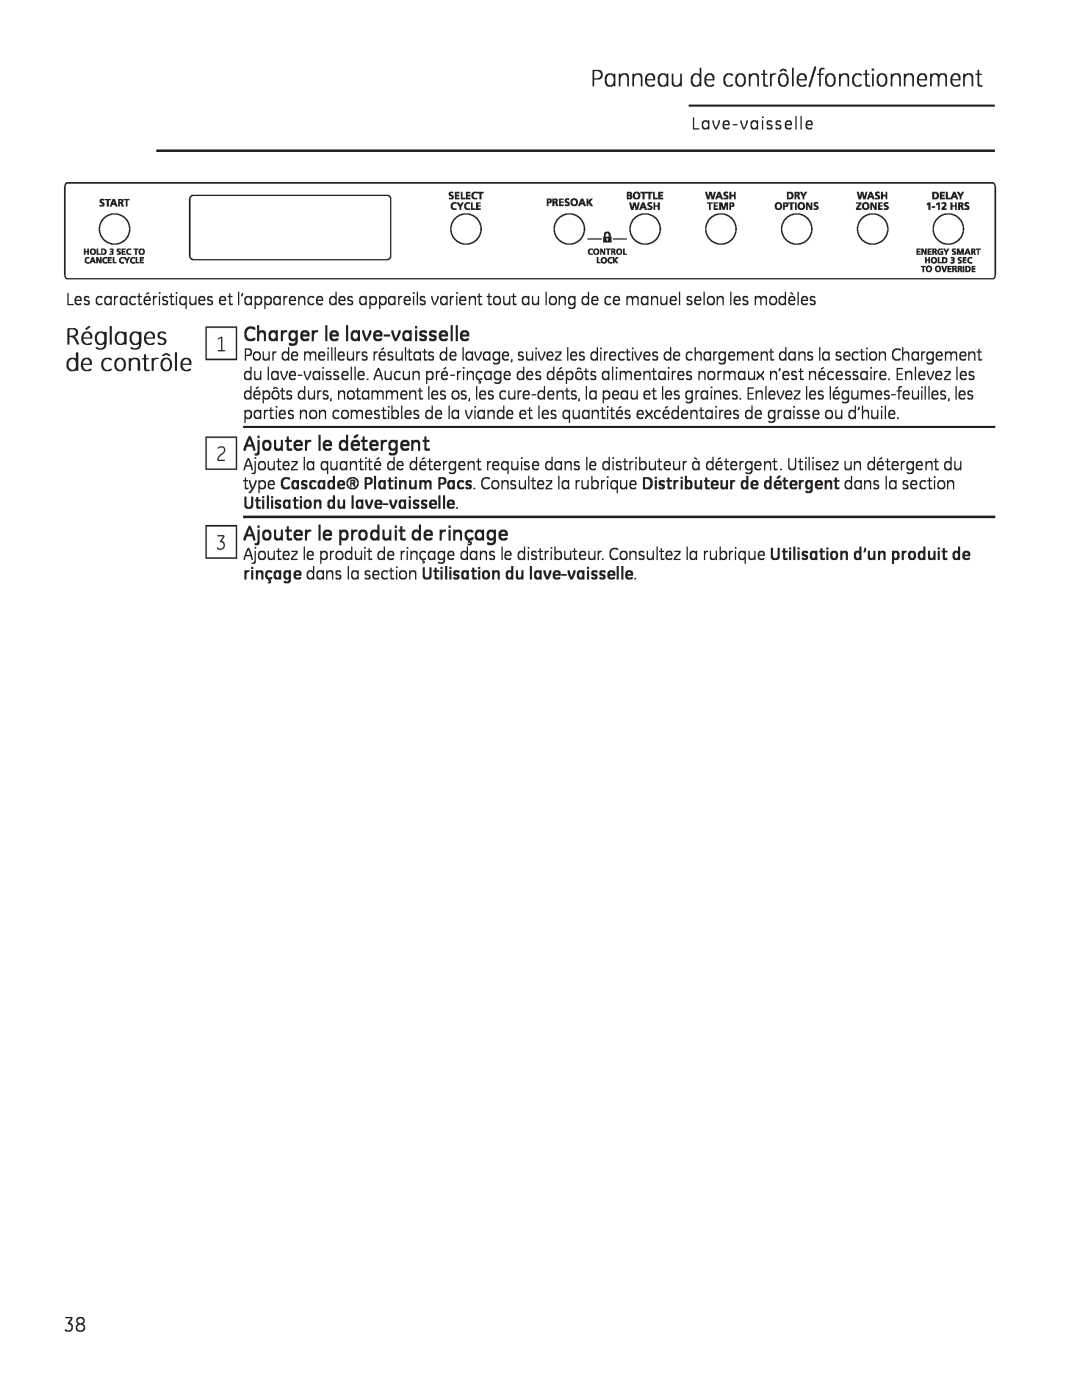 GE Monogram 49-55086 owner manual Panneau de contrôle/fonctionnement, Réglages de contrôle, Charger le lave-vaisselle 